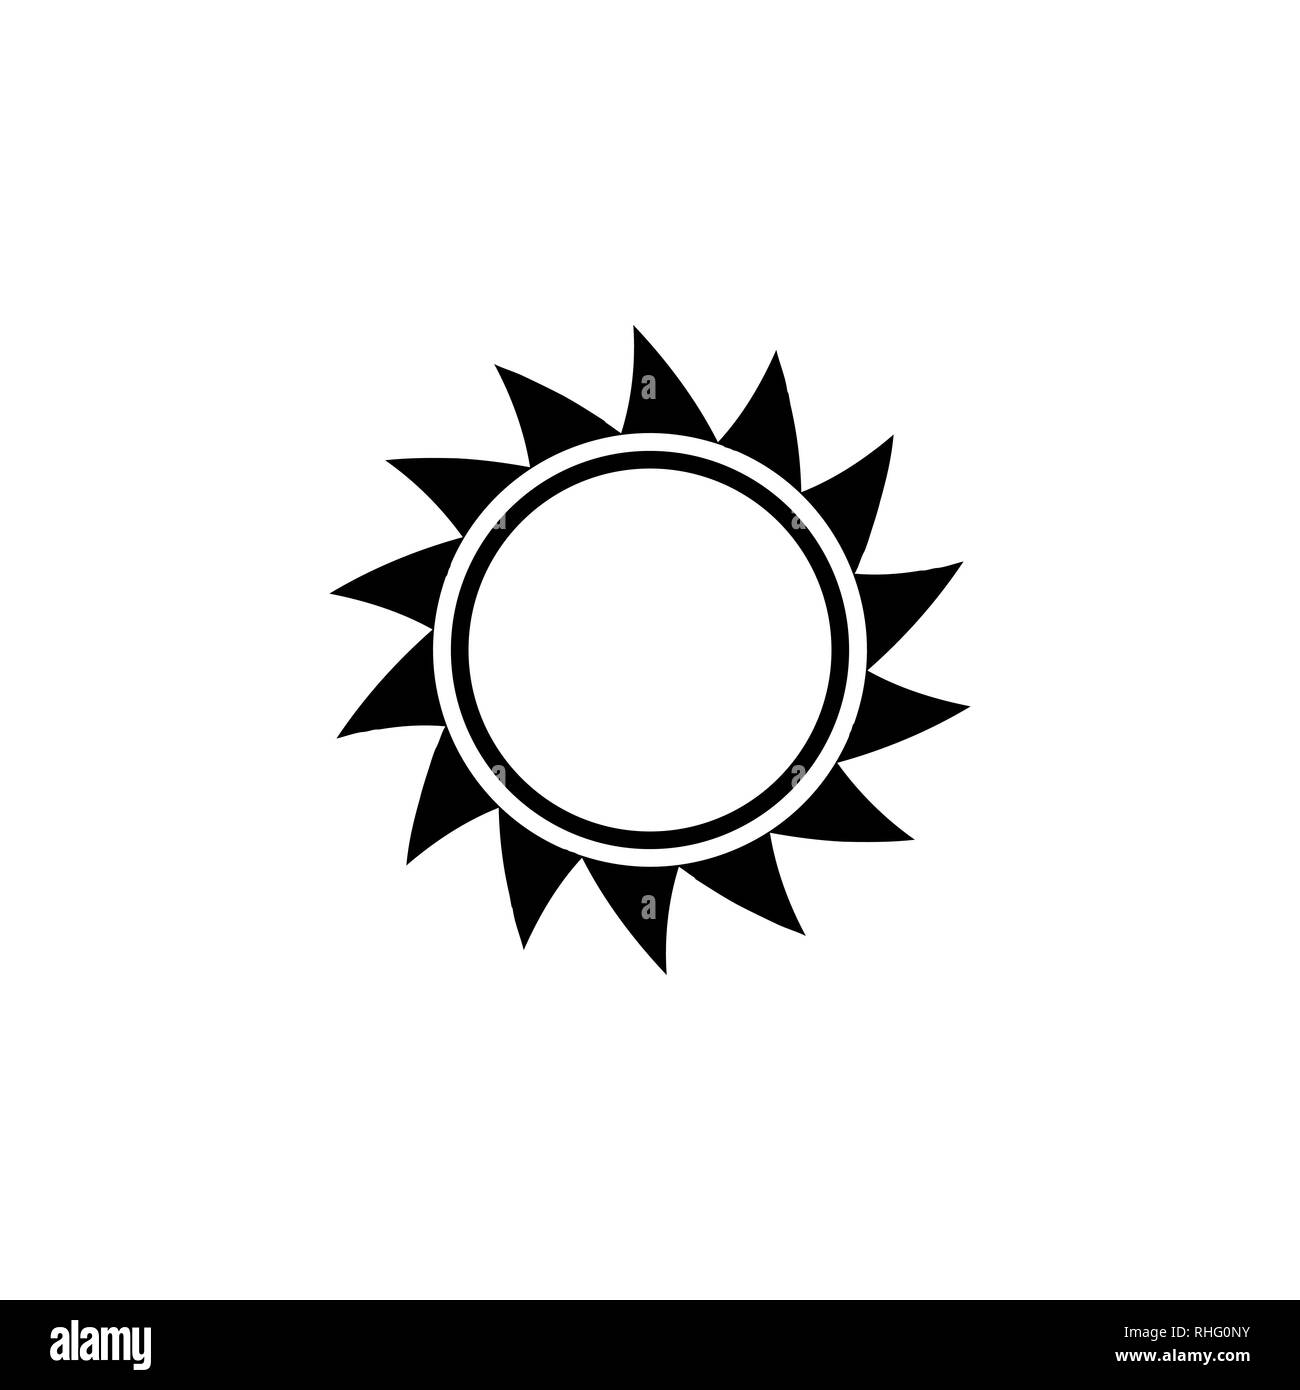 Icono De Sol Imágenes Recortadas De Stock Alamy 8649